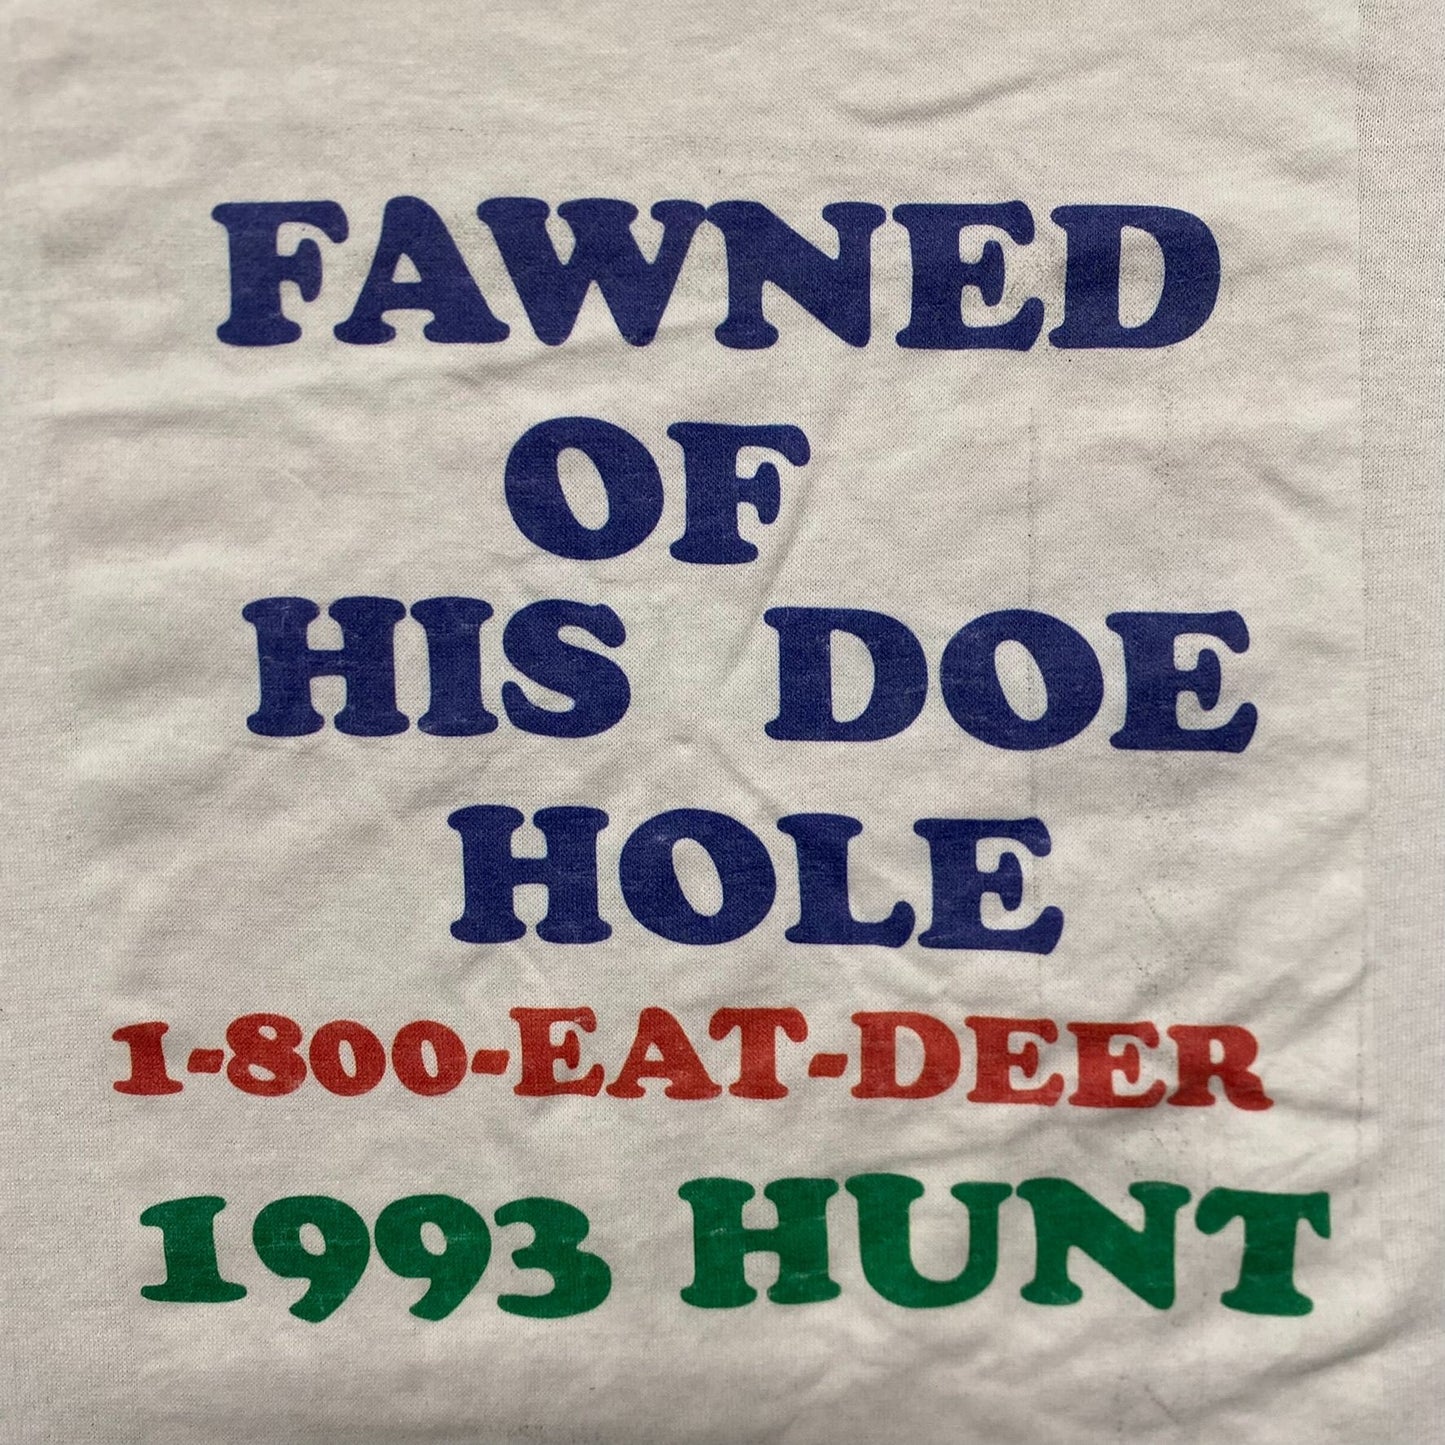 Vintage 90s Redneck Deer Hunting Single Stitch T-Shirt